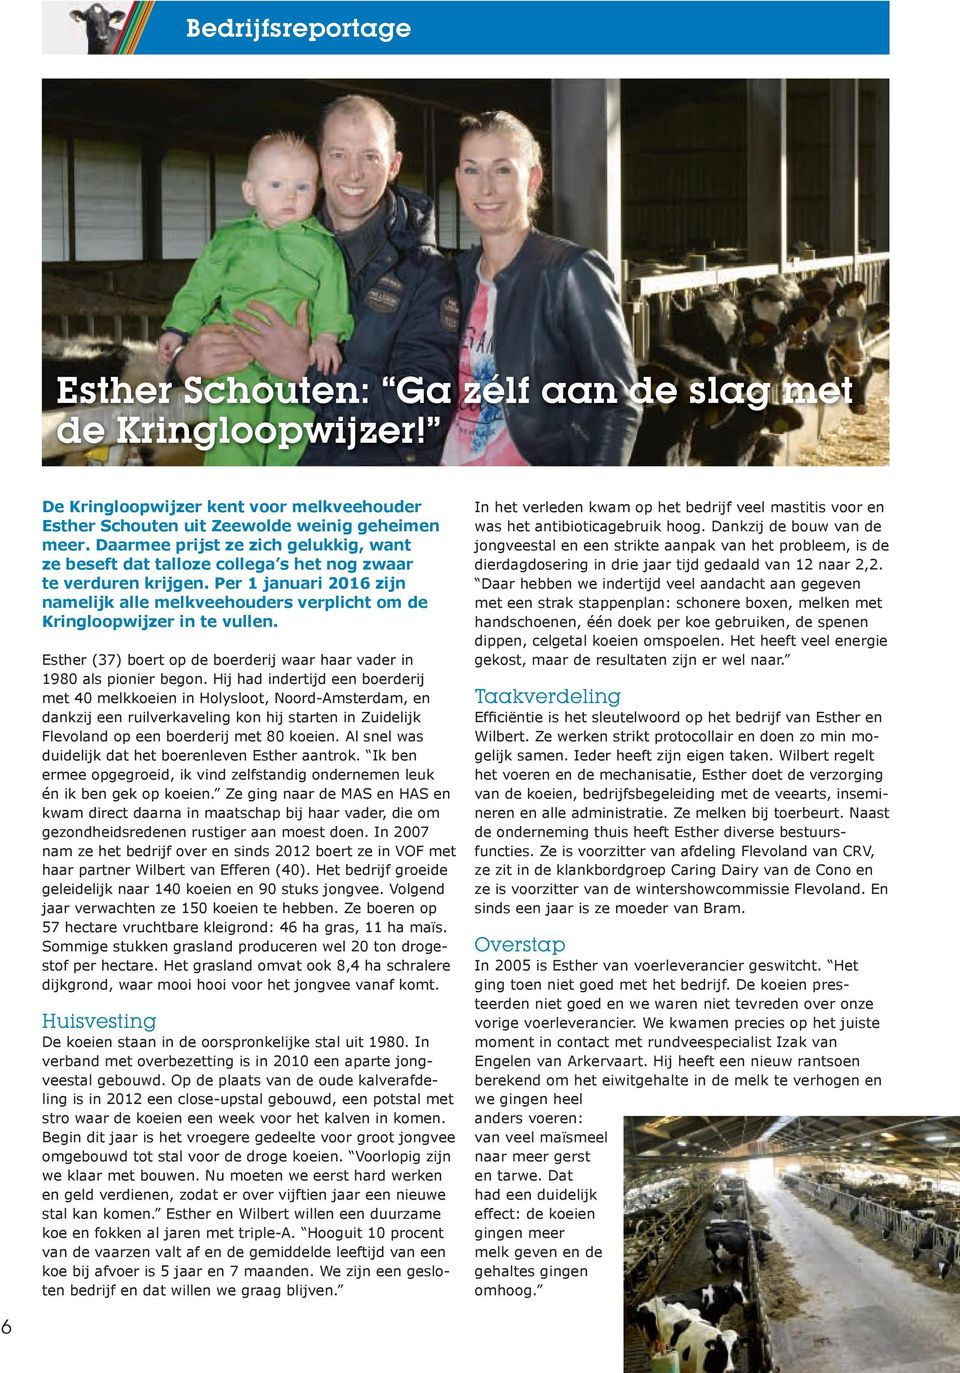 Per 1 januari 2016 zijn namelijk alle melkveehouders verplicht om de Kringloopwijzer in te vullen. Esther (37) boert op de boerderij waar haar vader in 1980 als pionier begon.